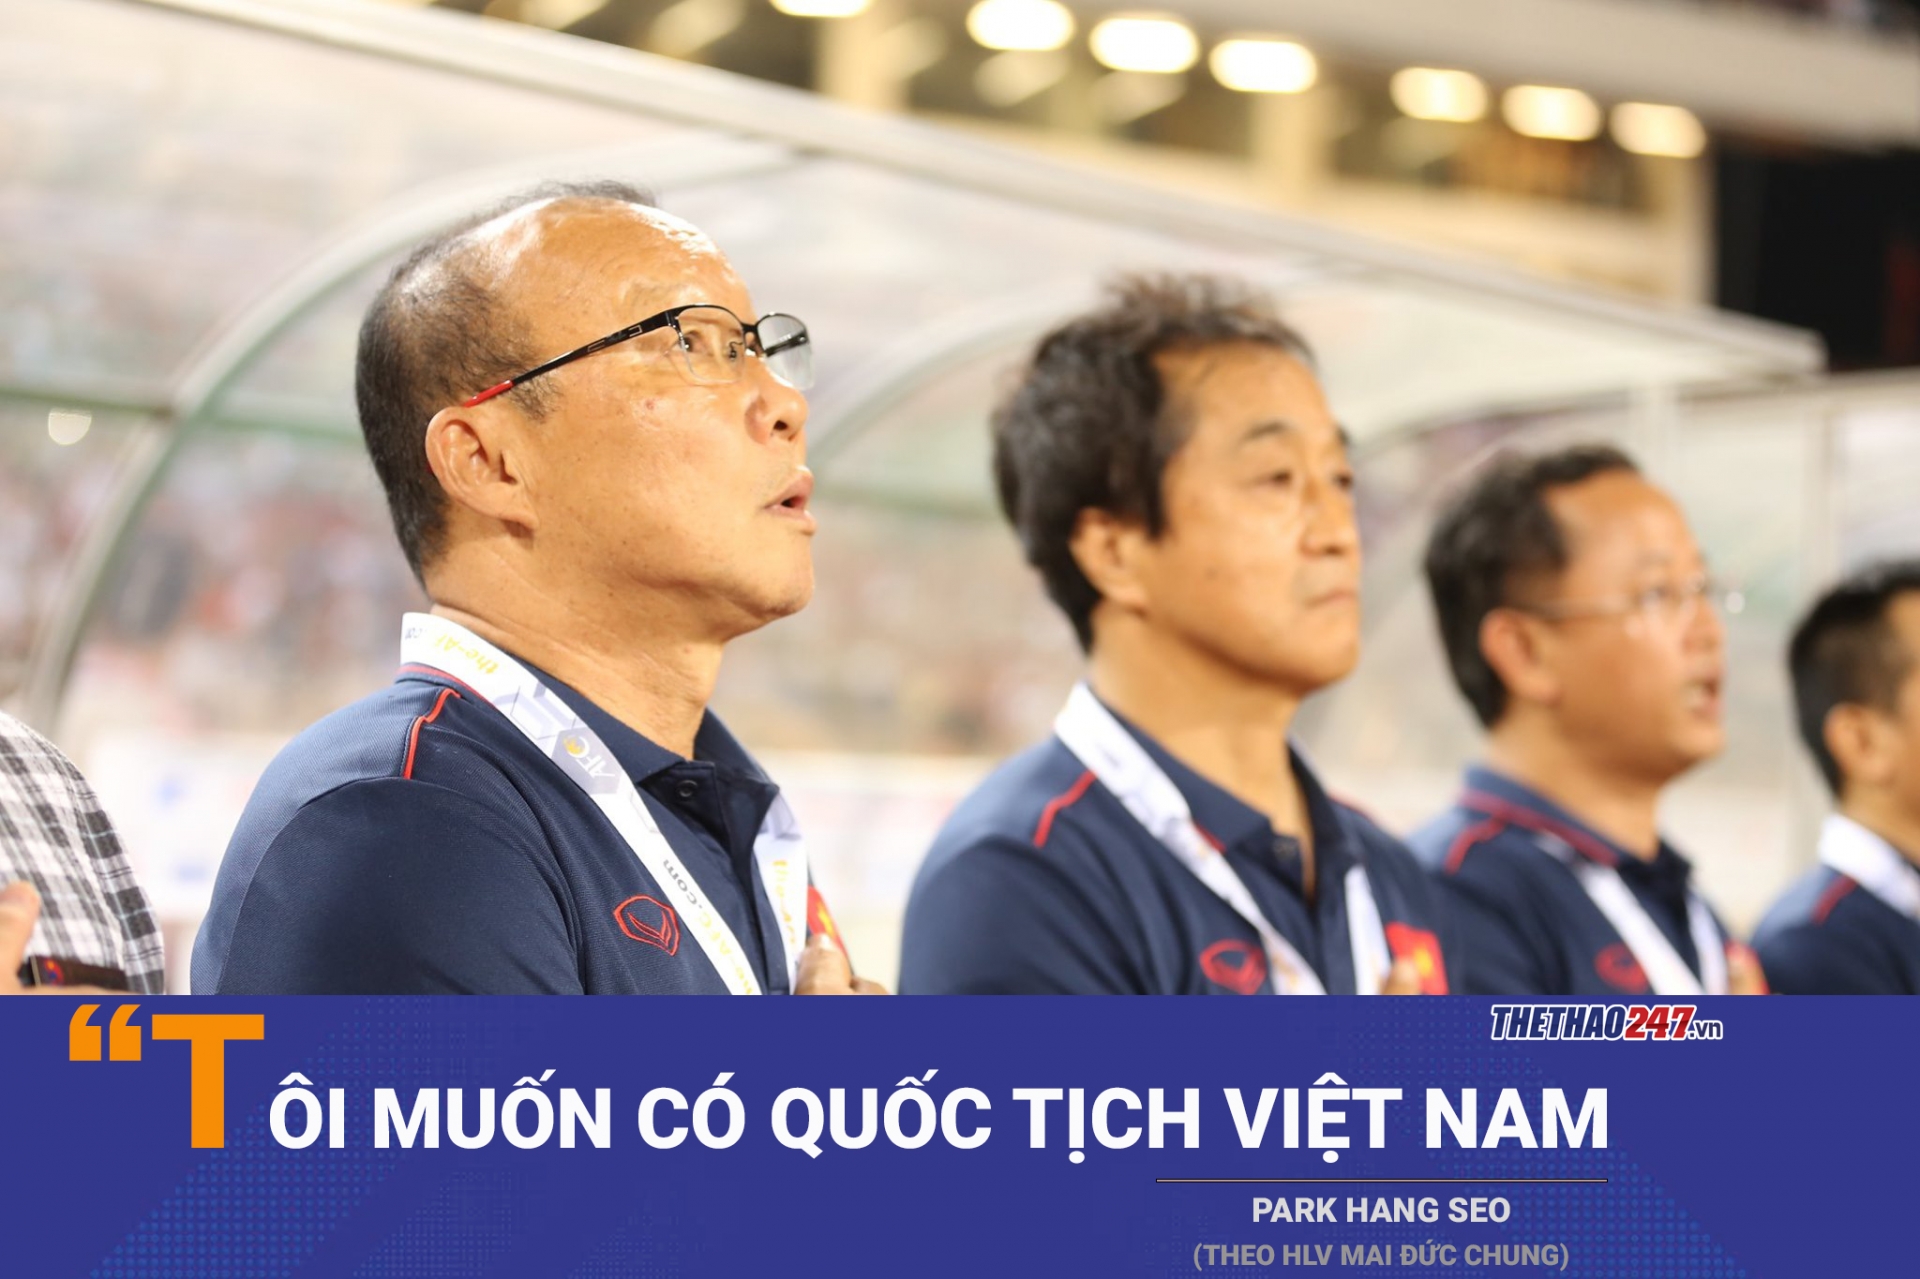 HLV Mai Đức Chung: Ông Park muốn nhập quốc tịch Việt Nam - Ảnh 3.